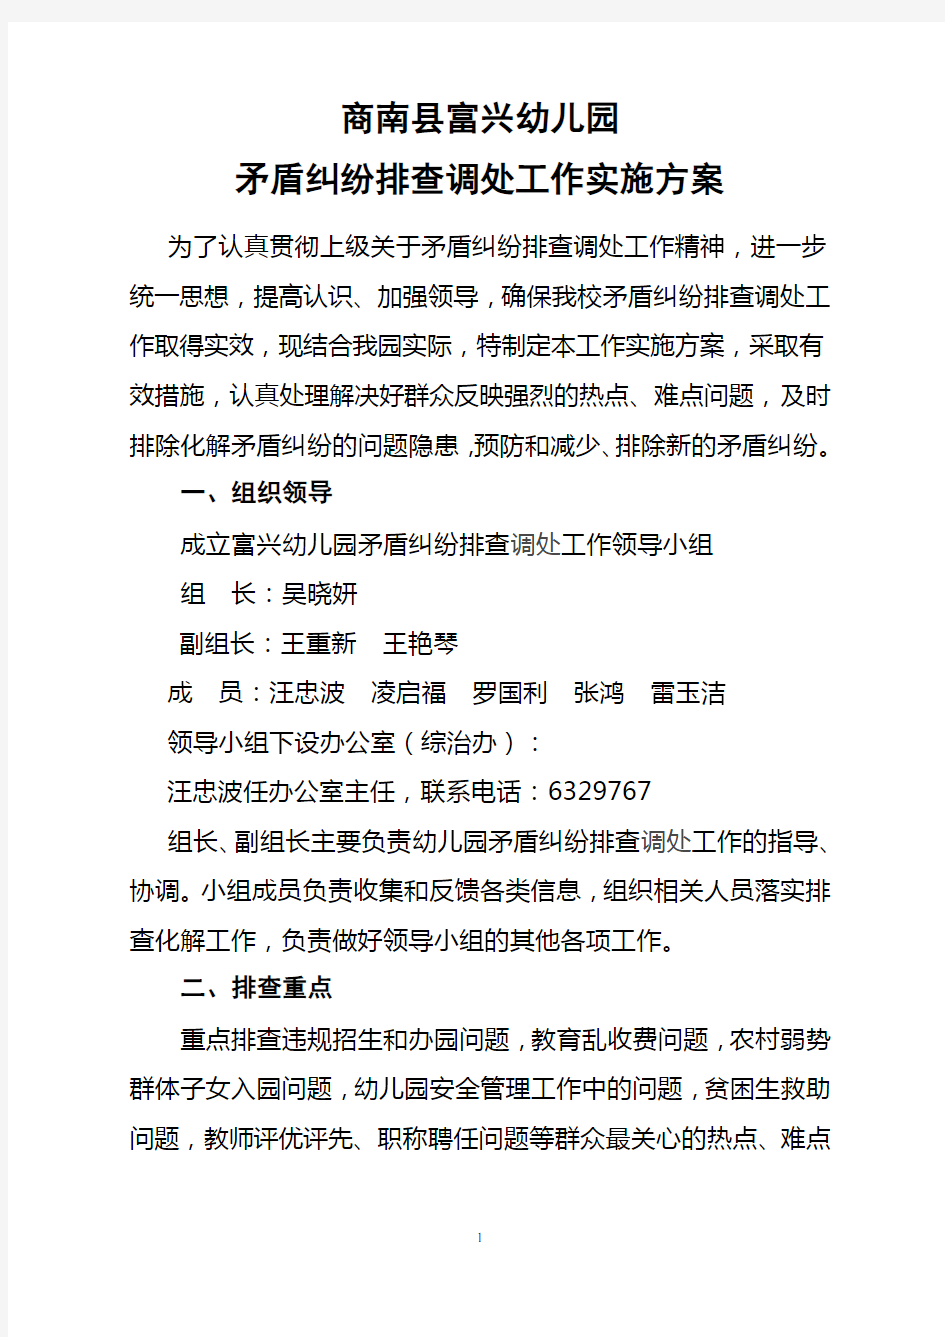 商南县富兴幼儿园矛盾纠纷排查调处工作实施方案